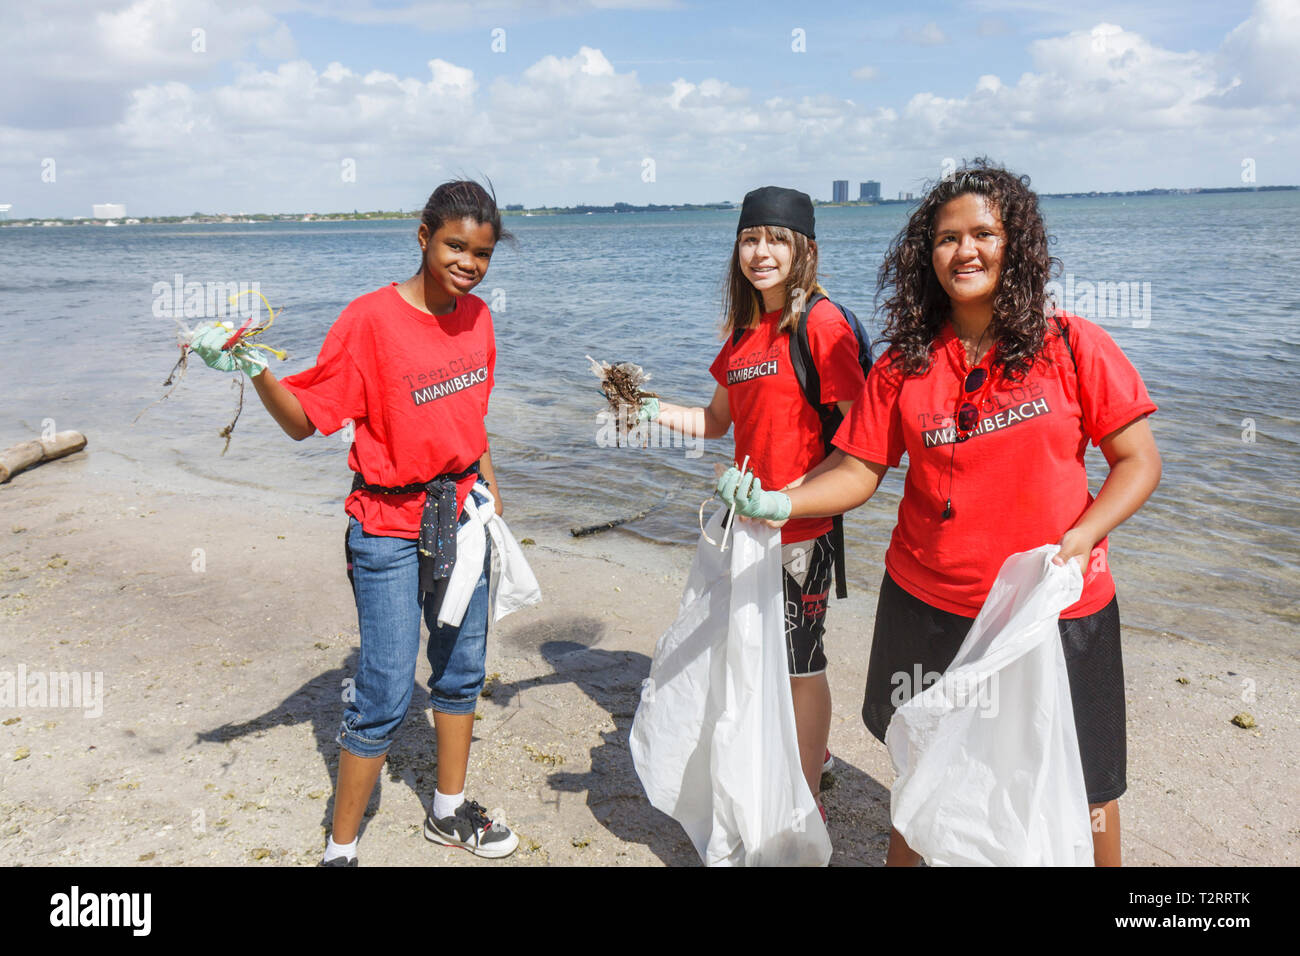 Miami Florida,Julia Tuttle Causeway,i,Interstate,Baynanza,Biscayne Bay Cleanup Day,pulizia volontari volontari volontari volontari volontariato lavoratori del lavoro,lavoro Foto Stock